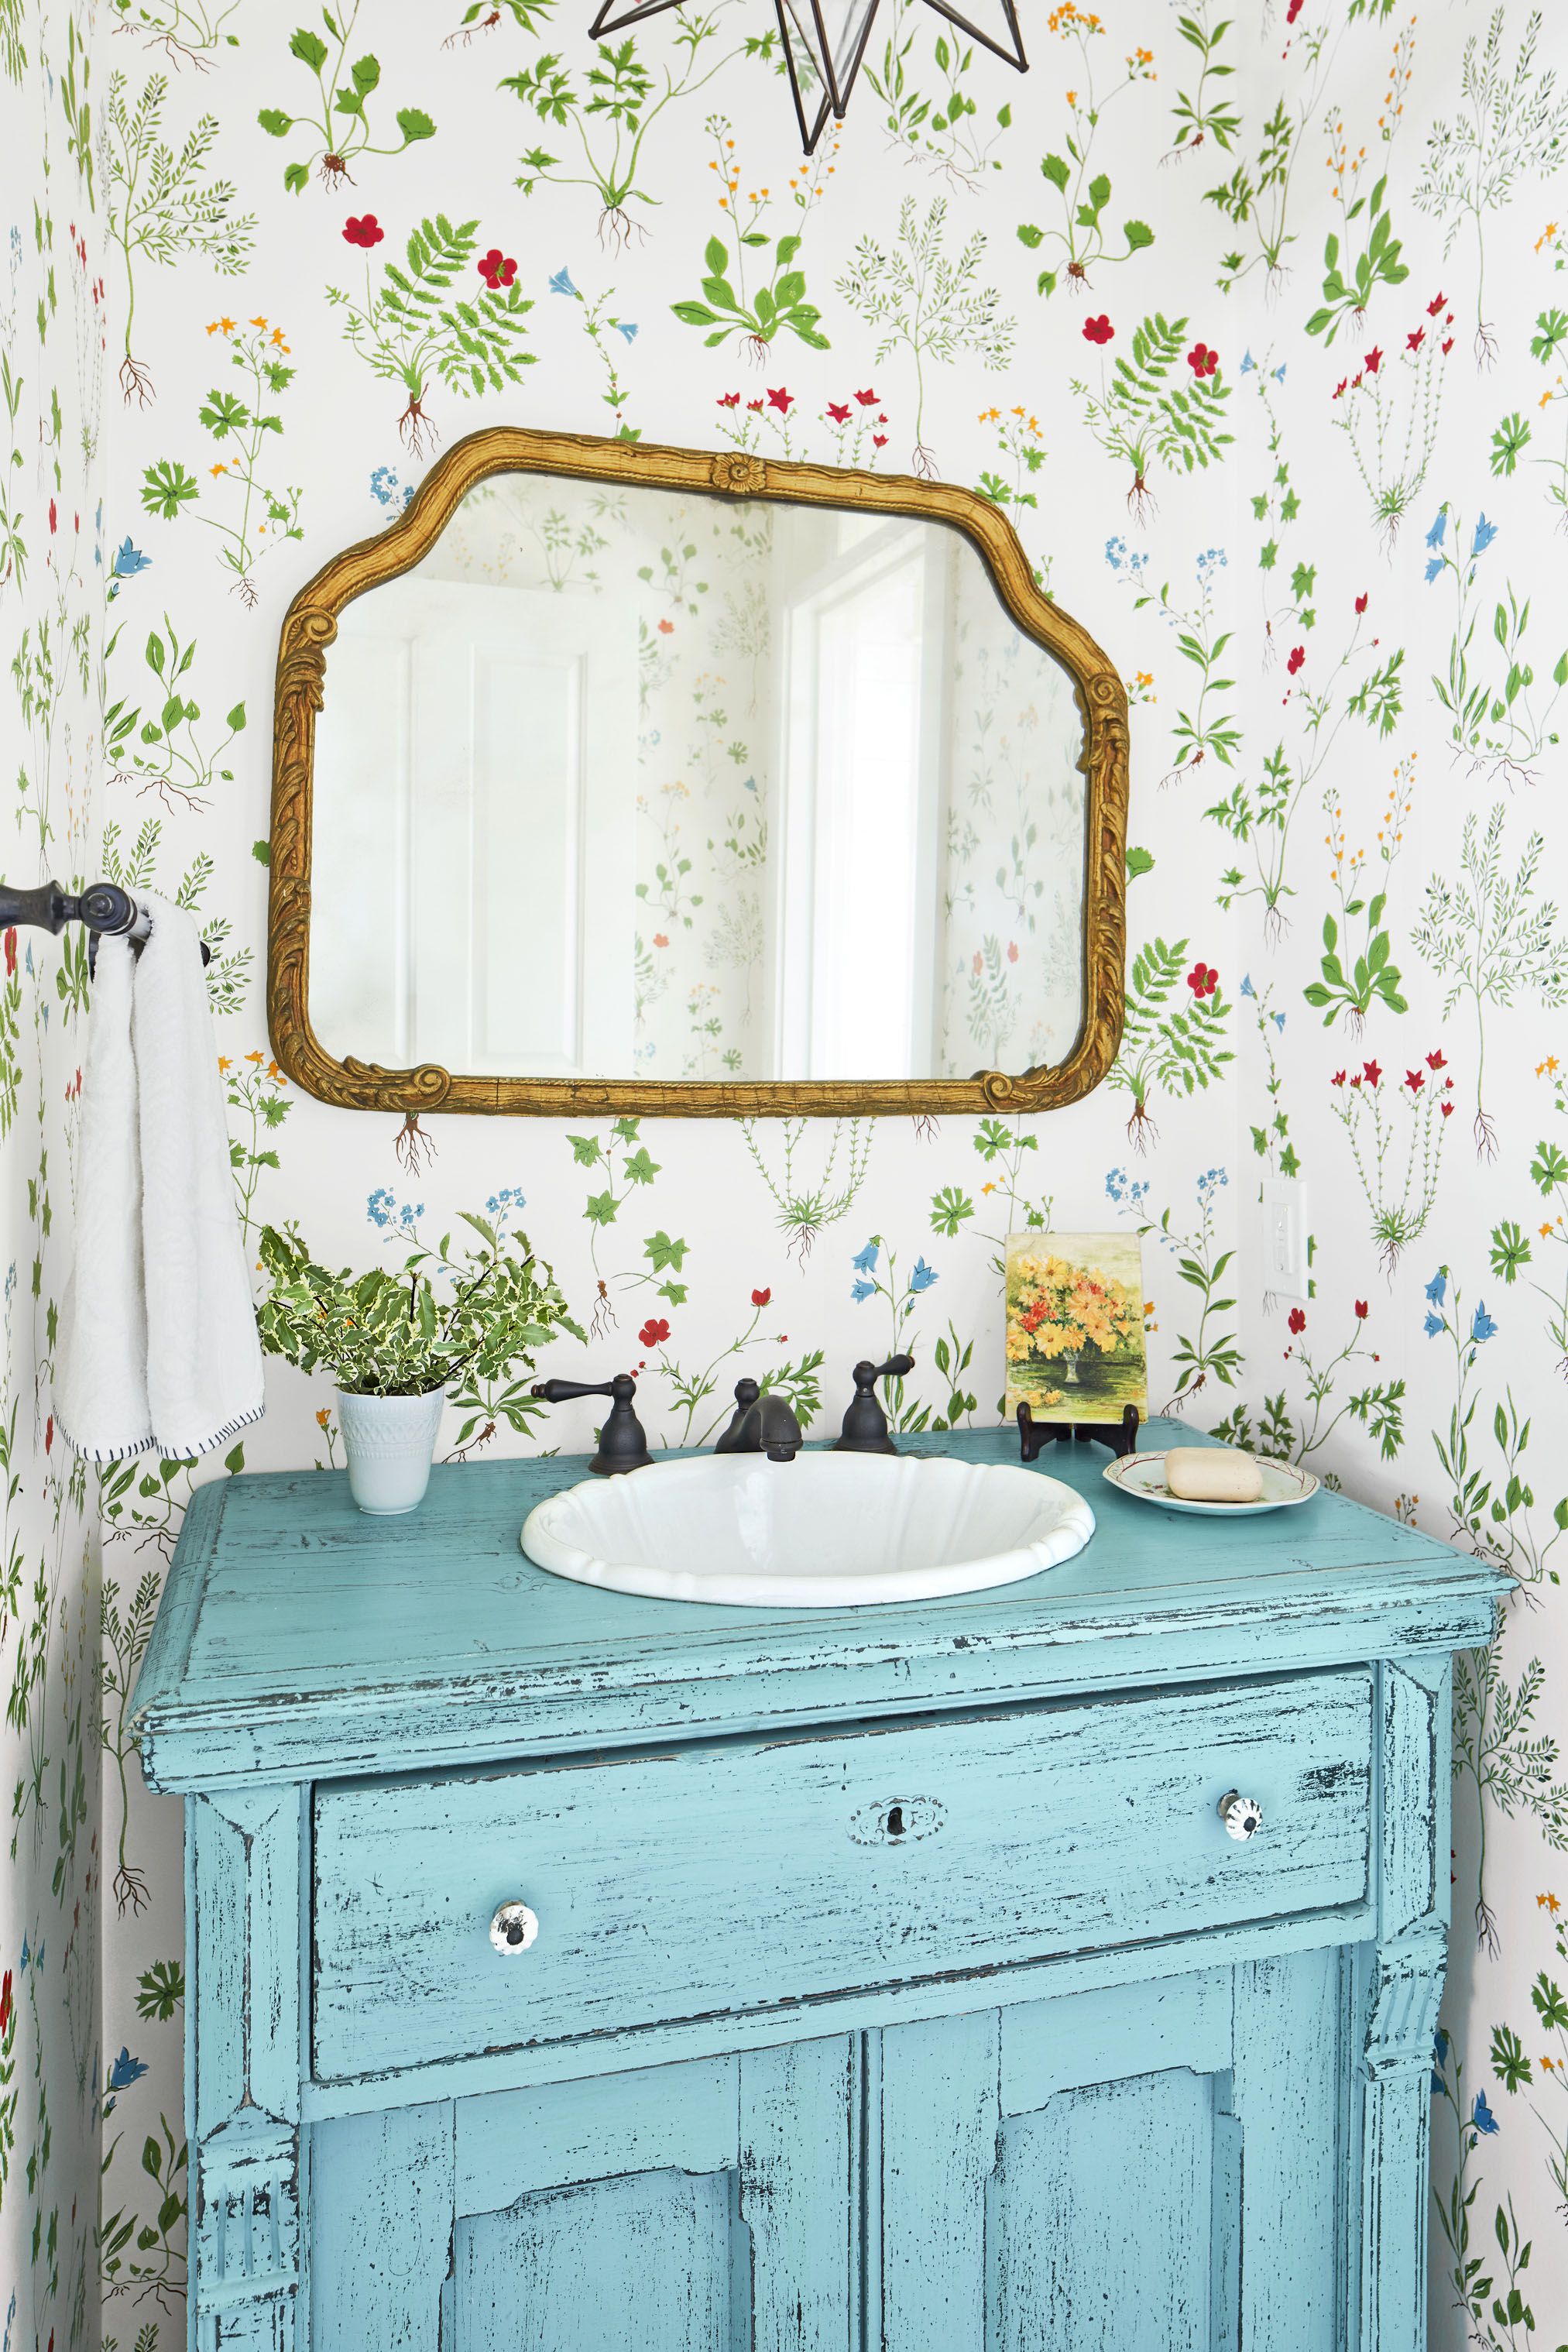 15 Best Bathroom Countertop Ideas, Best Wood For Bathroom Vanity Countertop